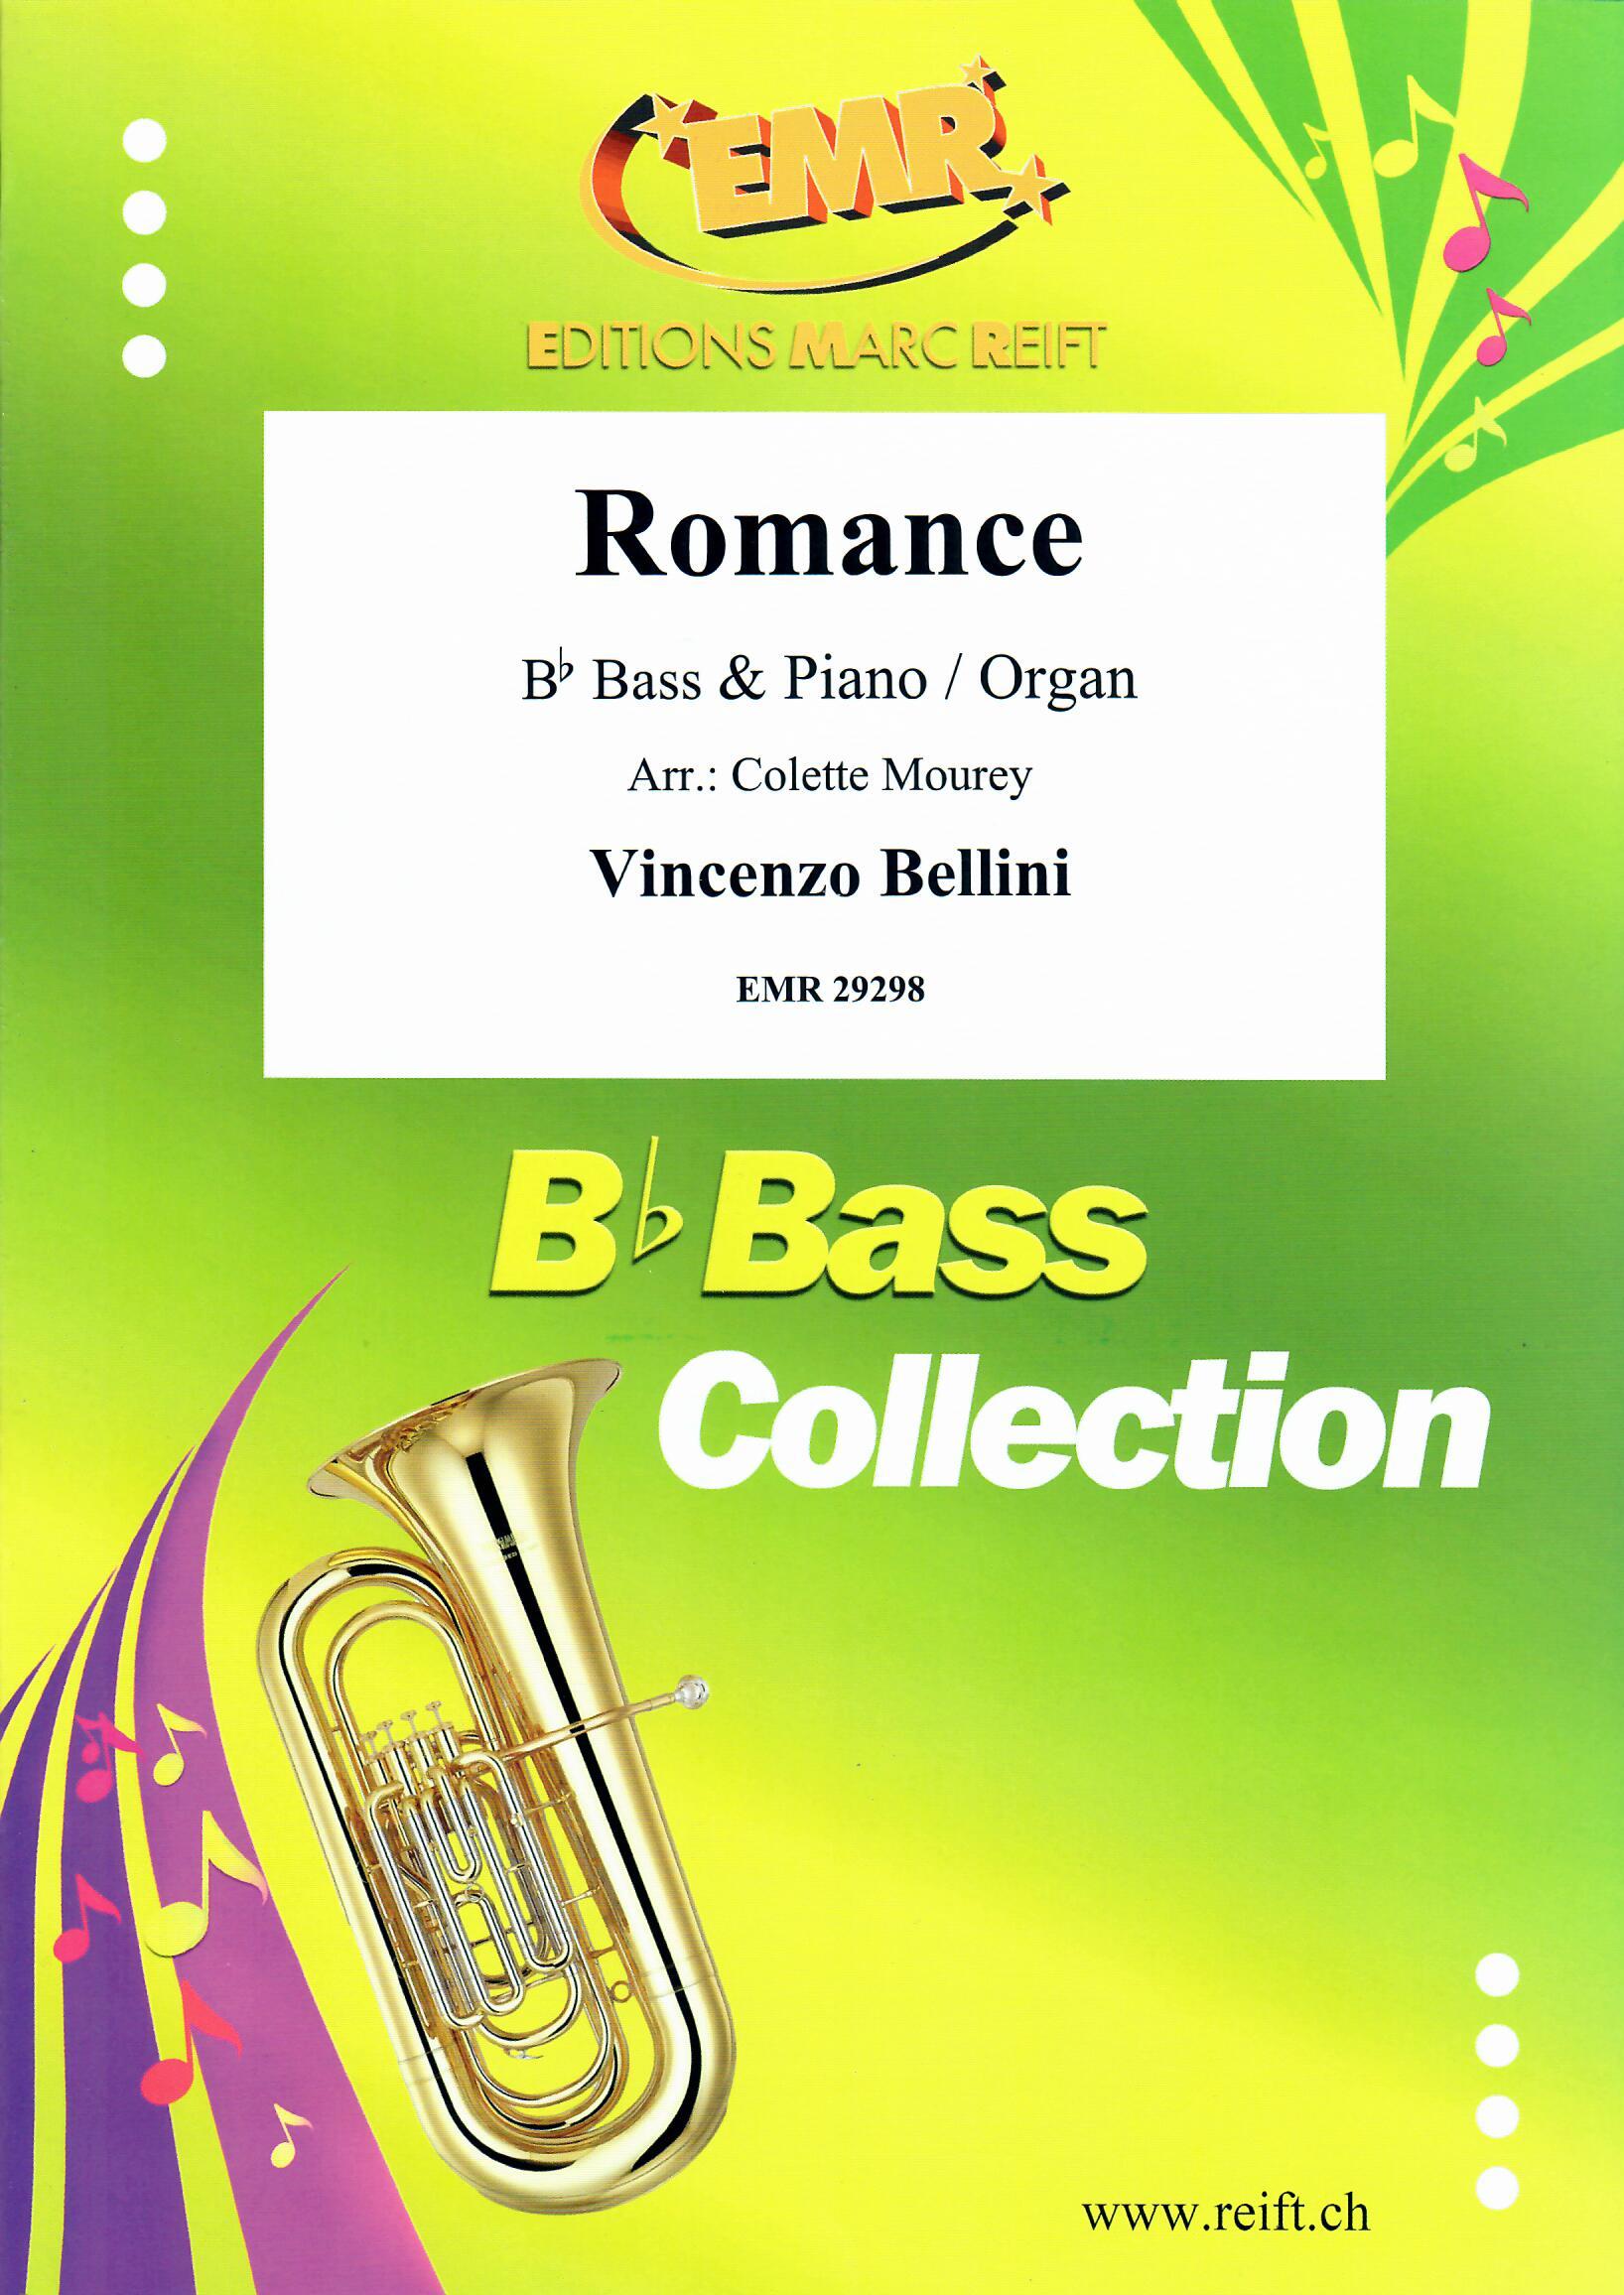 ROMANCE, SOLOS - E♭. Bass